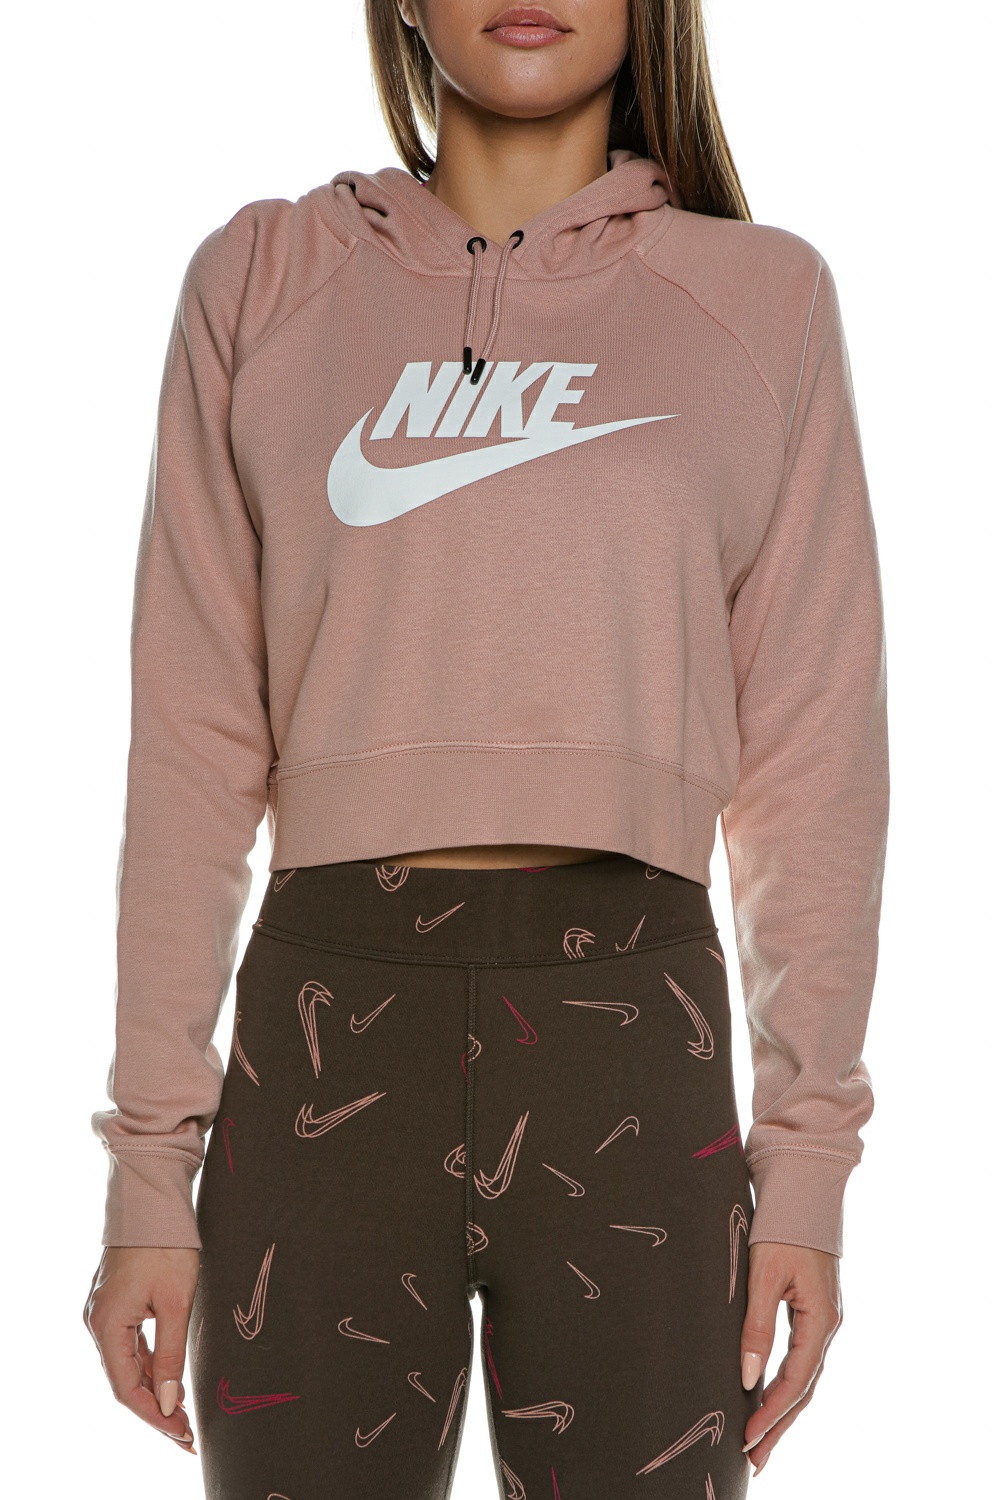 Γυναικεία/Ρούχα/Φούτερ/Μπλούζες NIKE - Γυναικεία cropped φούτερ μπλούζα NIKE NSW ESSNTL FLC GX CROP HDY ροζ